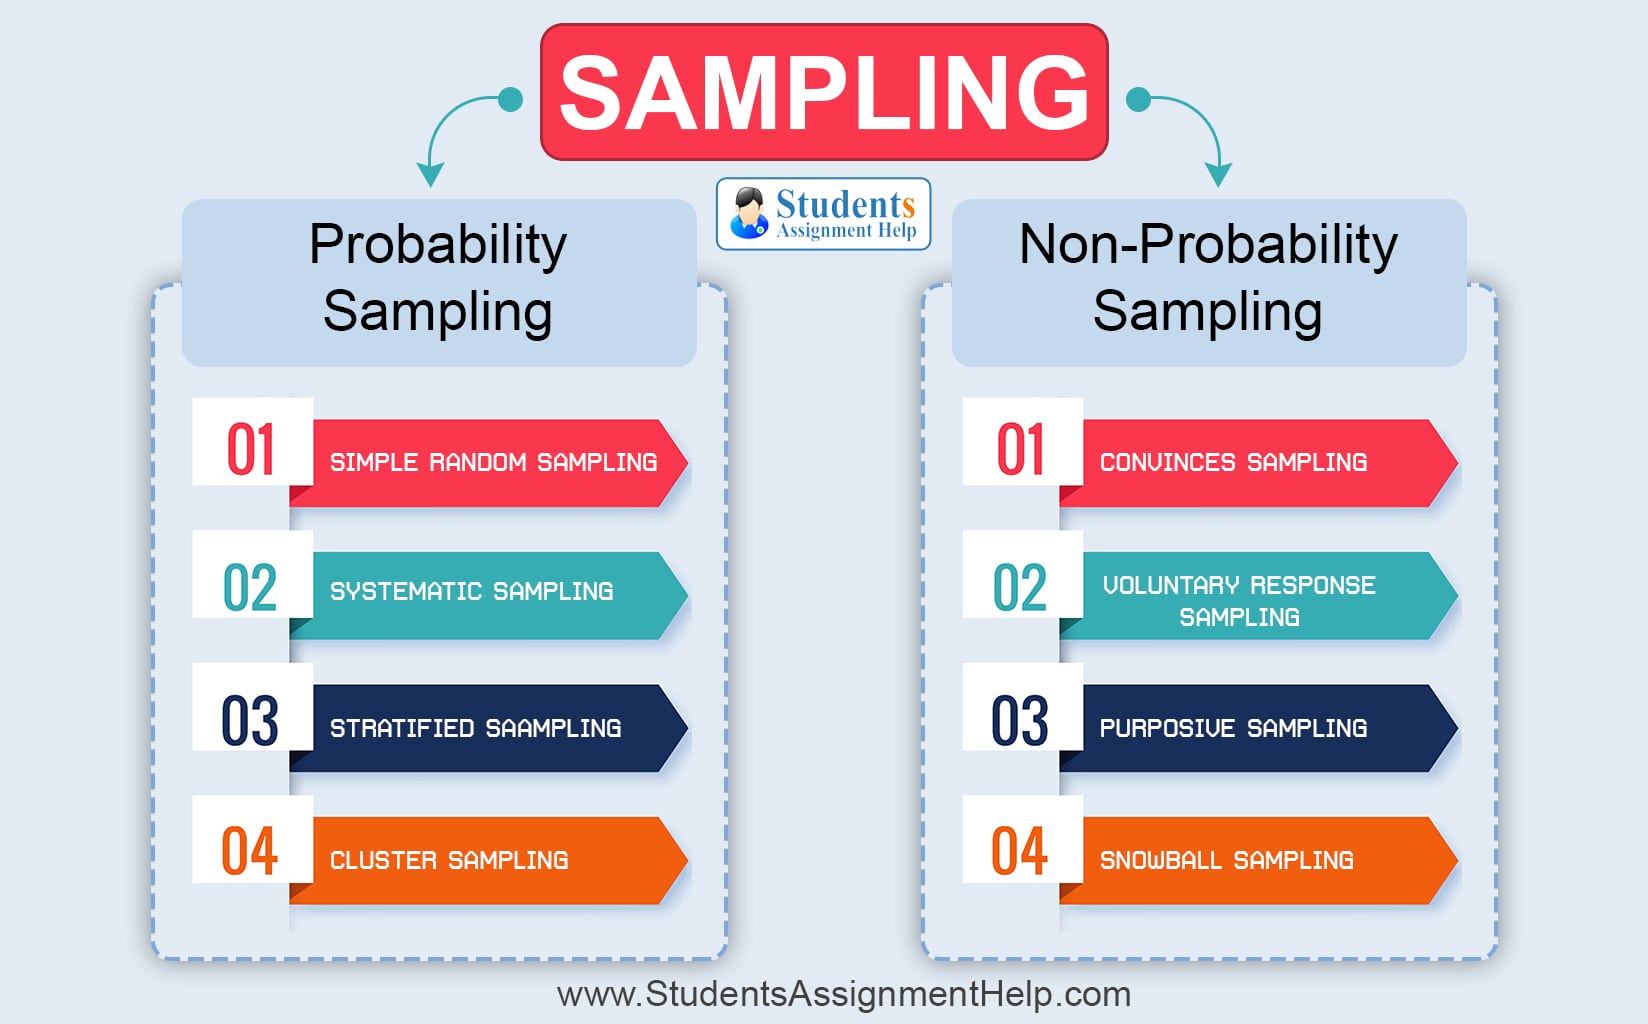 Sampling methodology